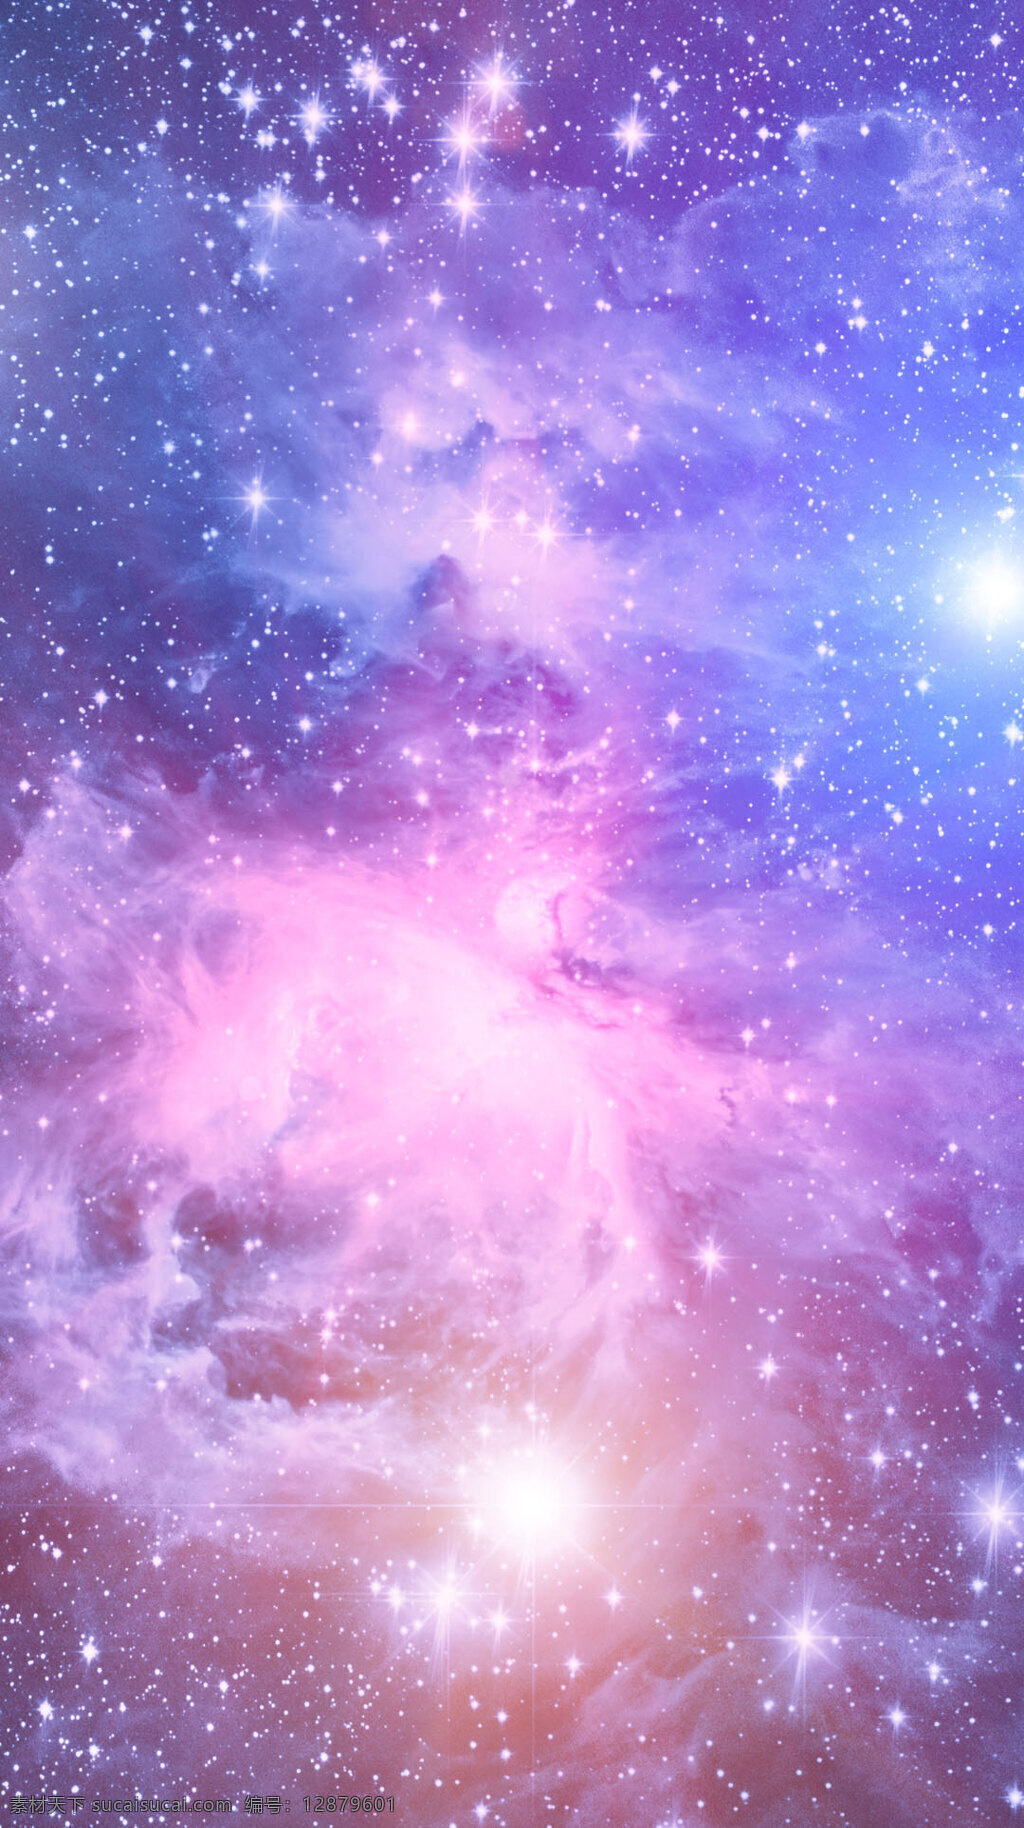 紫色 梦幻 星空 h5 背景 背景素材 唯美 银河 宇宙 底图 底纹 幻想 闪耀 星星 耀眼 艺术文艺类